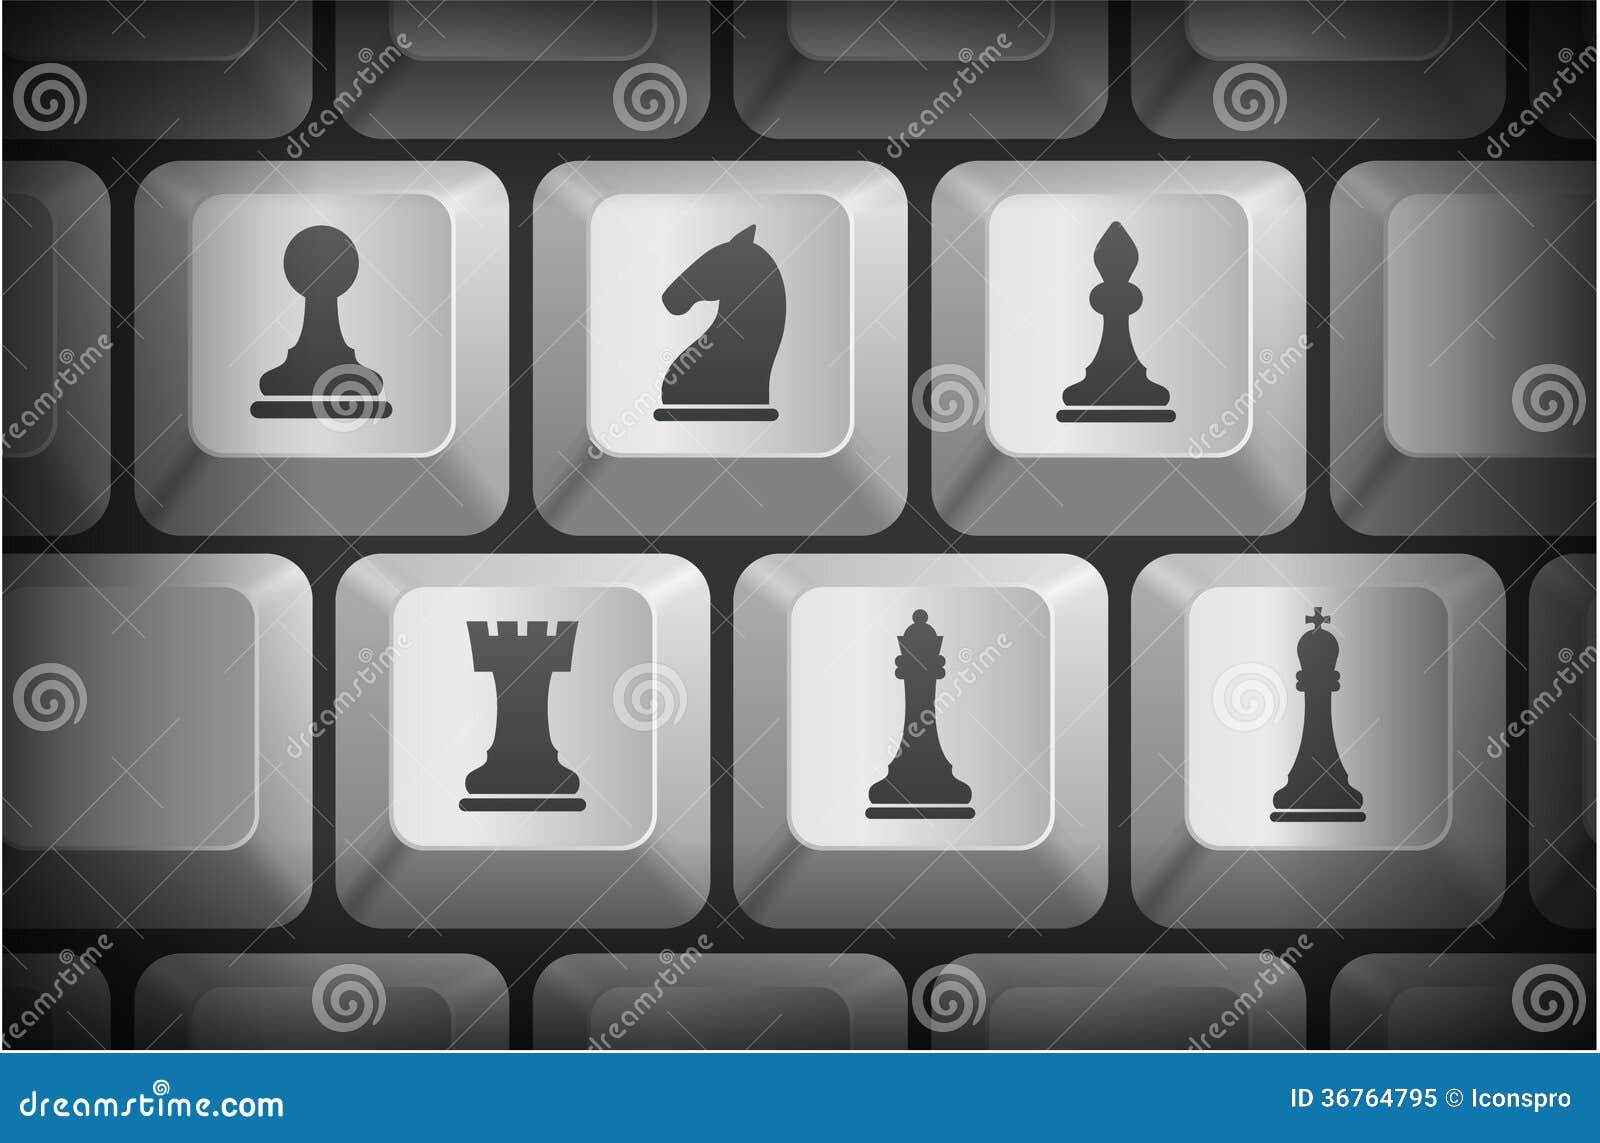 Schach-Ikonen Auf Computer-Tastatur-Knöpfen Stock Abbildung